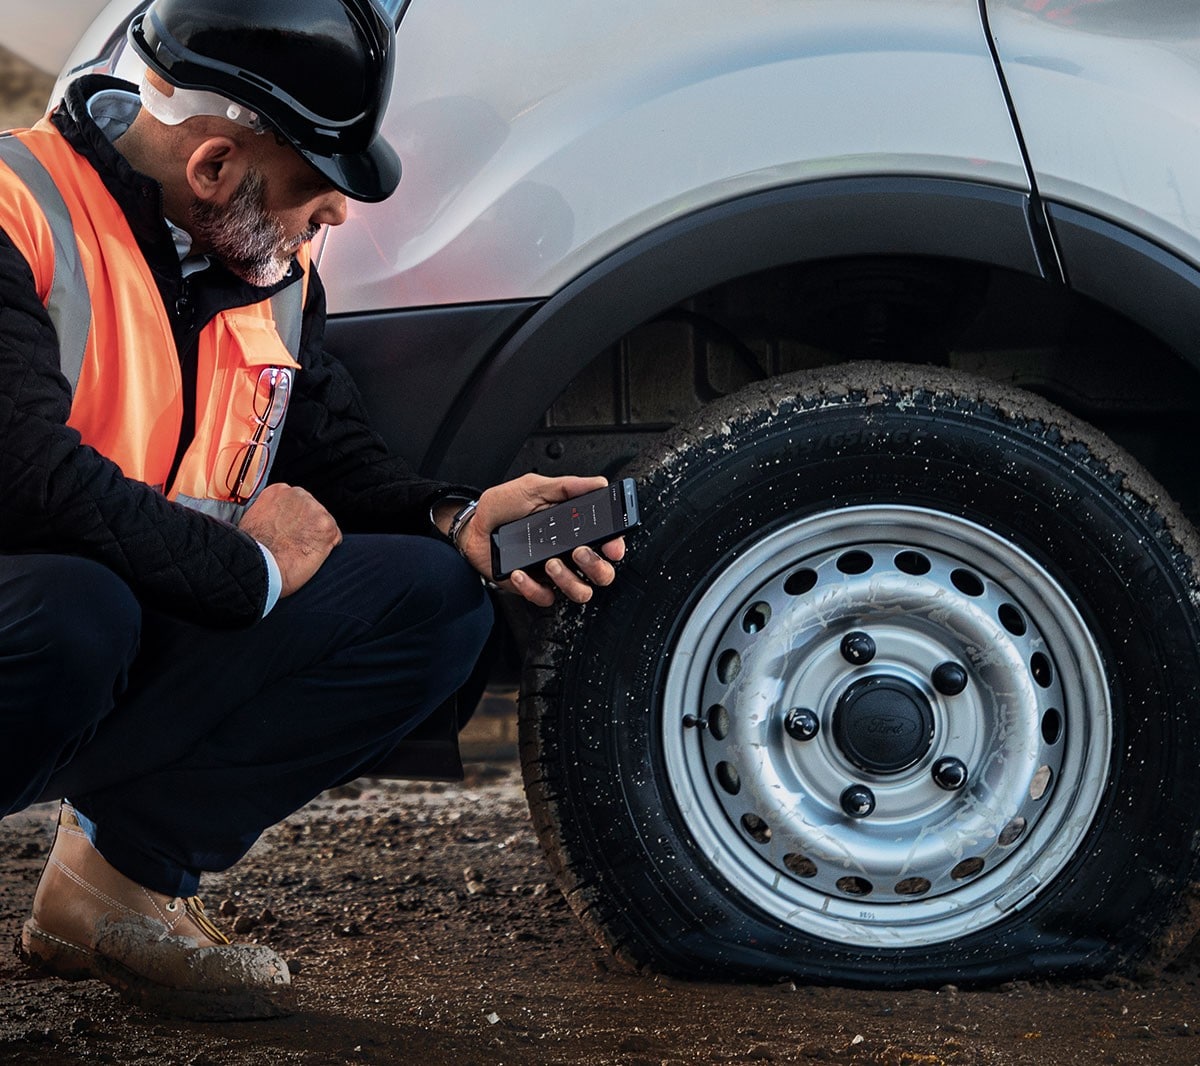 Un ouvrier portant un casque de chantier et un gilet de sécurité est agenouillé à côté d'un véhicule dont le pneu est crevé et tient un téléphone portable à la main.